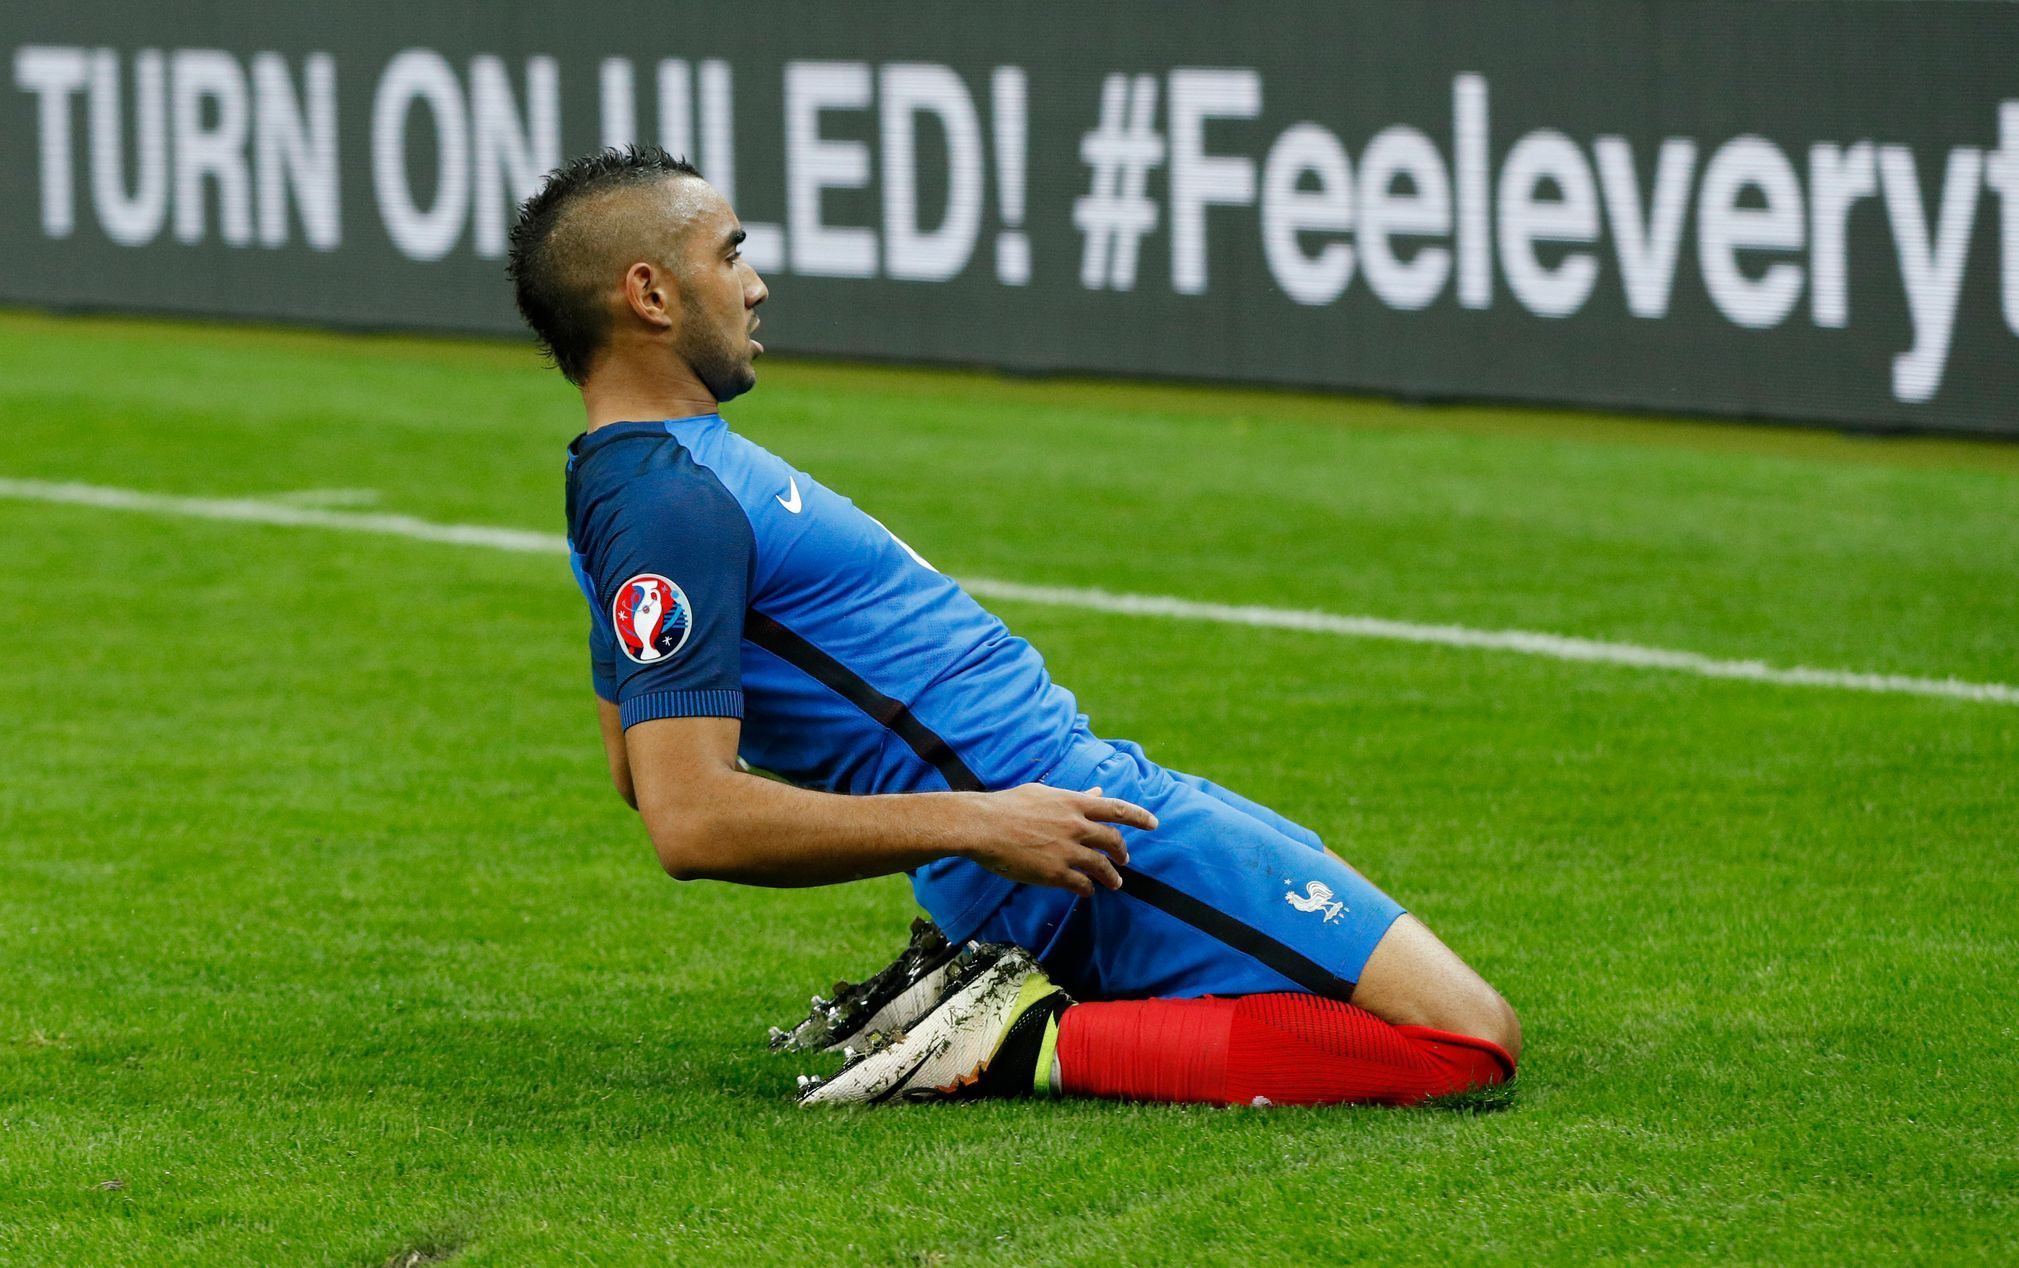 Euro 2016, Francie-Island: Dimitri Payet slaví gól na 3:0